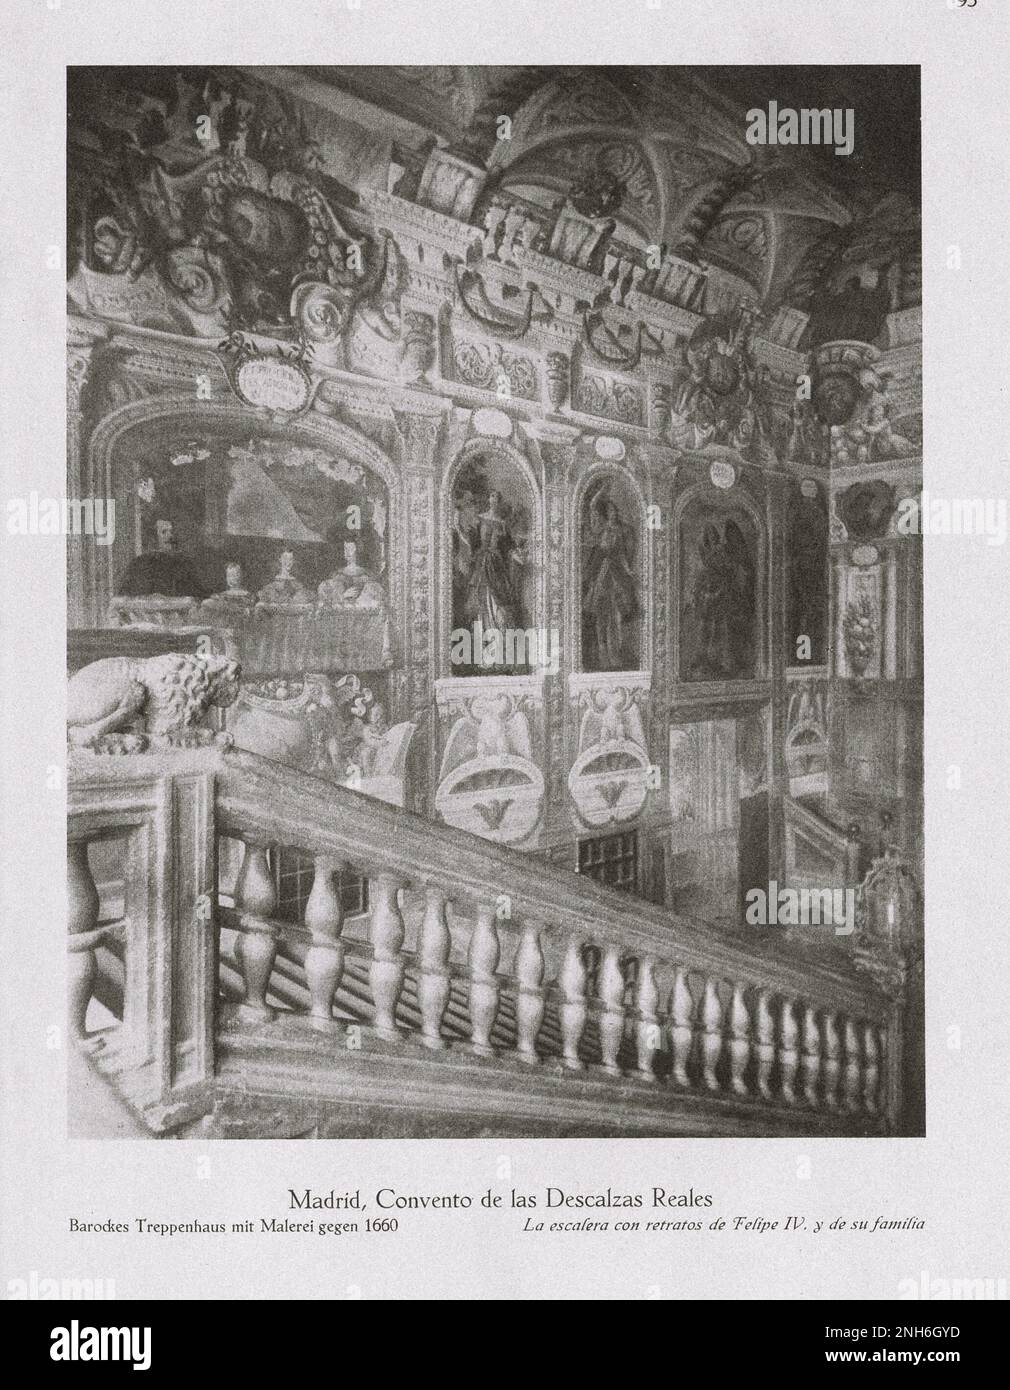 Architektur des alten Spaniens. Oldtimer-Foto des Klosters Las Descalzas (reales Monasterio de las Descalzas reales) in Madrid. Barocke Treppe mit Gemälden um 1660 Uhr. Stockfoto